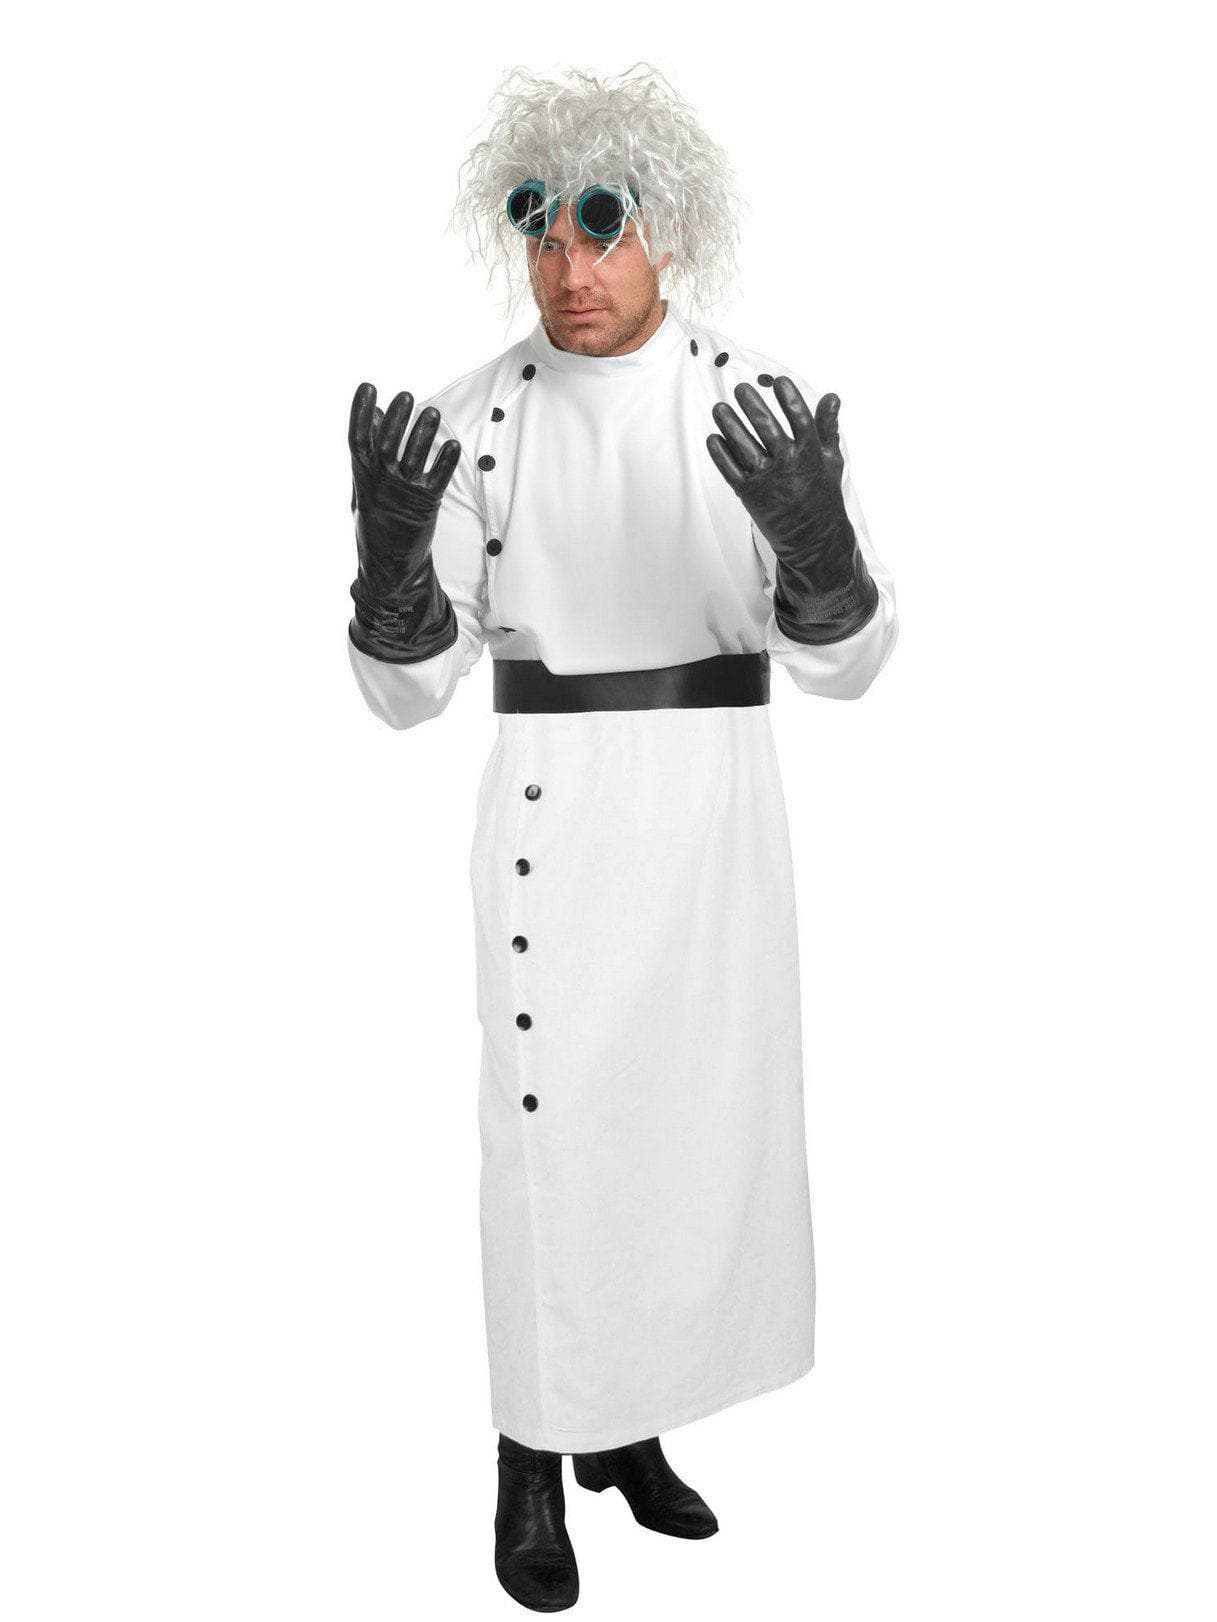 Adult Mad Scientist Costume - costumes.com